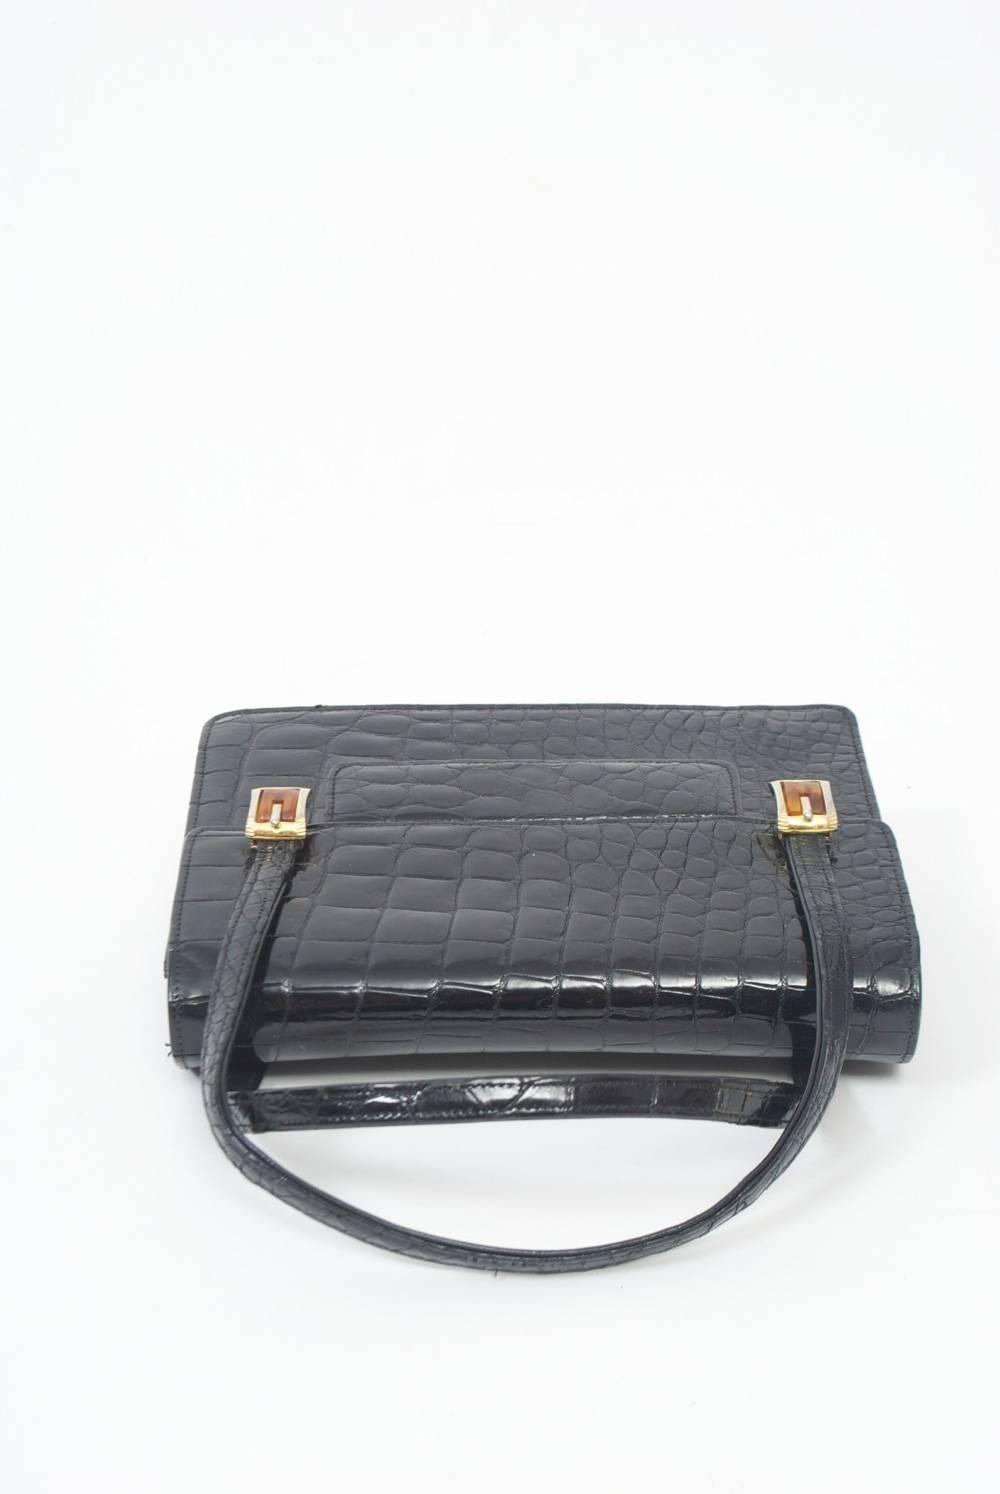 1960s Black Alligator Handbag For Sale 2